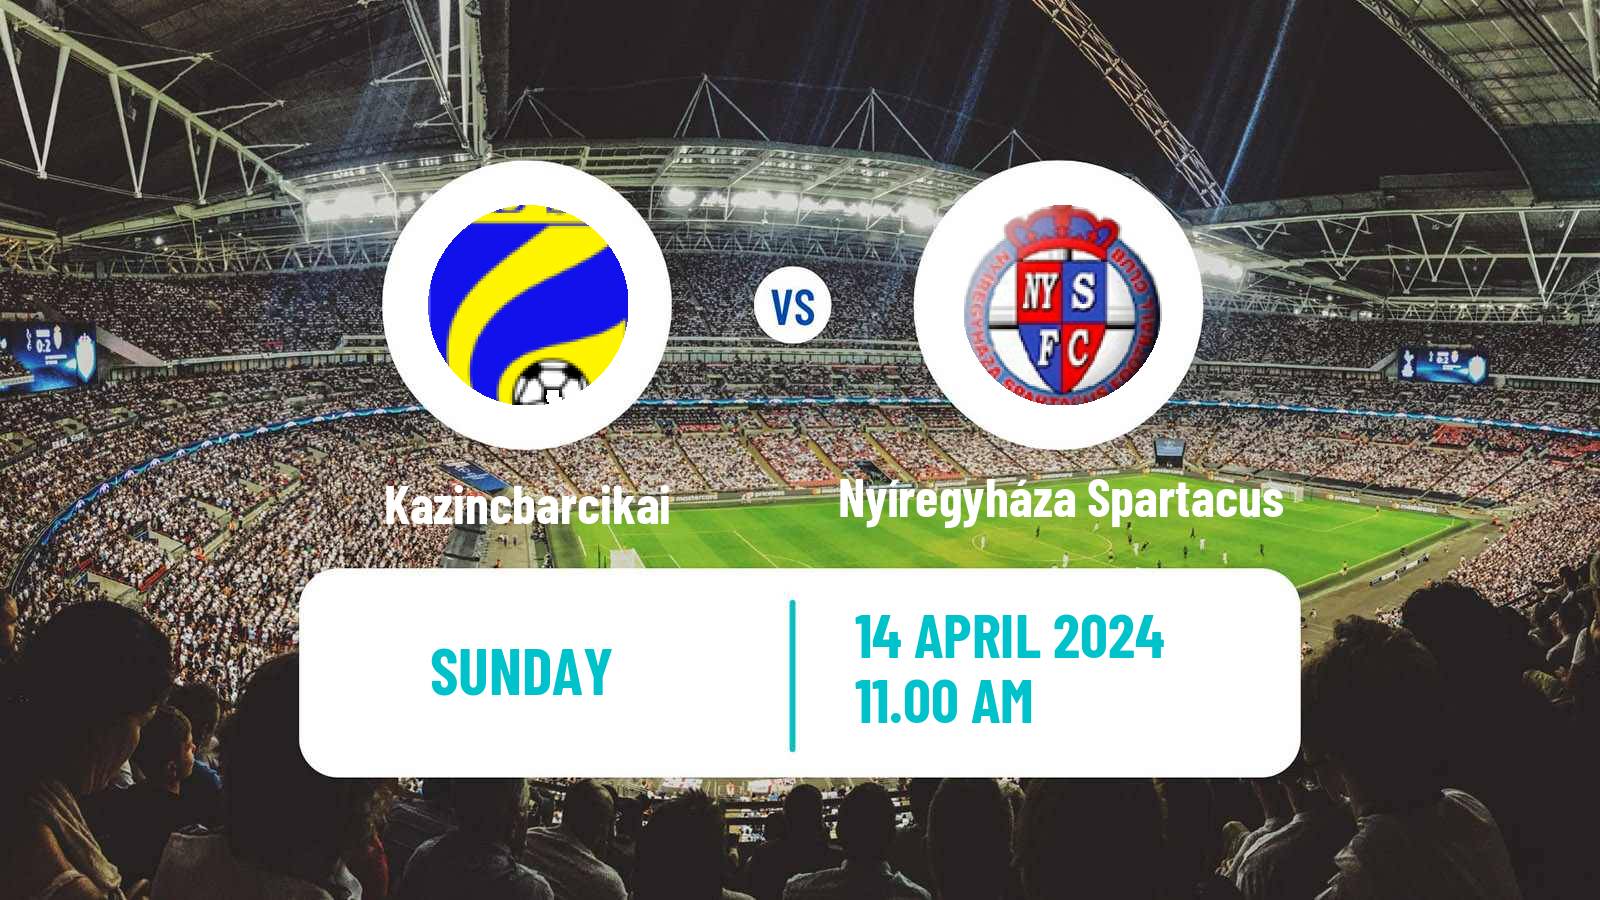 Soccer Hungarian NB II Kazincbarcikai - Nyíregyháza Spartacus